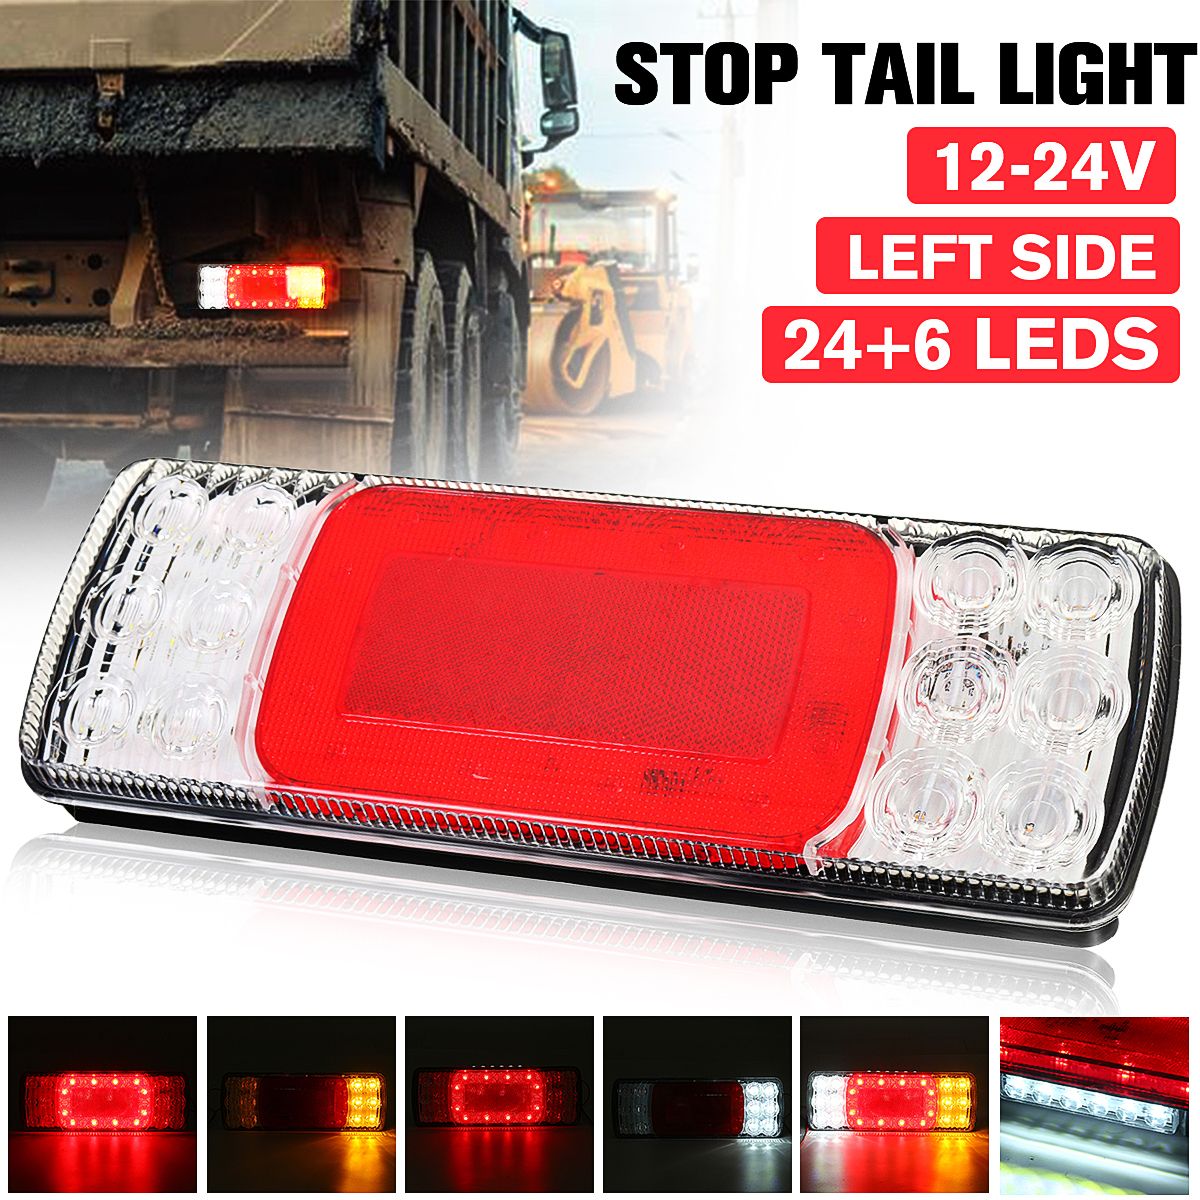 LED-Rear-Left-Tail-Stop-Brake-Light-Turn-Signal-Indicator-12V-24V-For-Van-Truck-Lorry-1756044